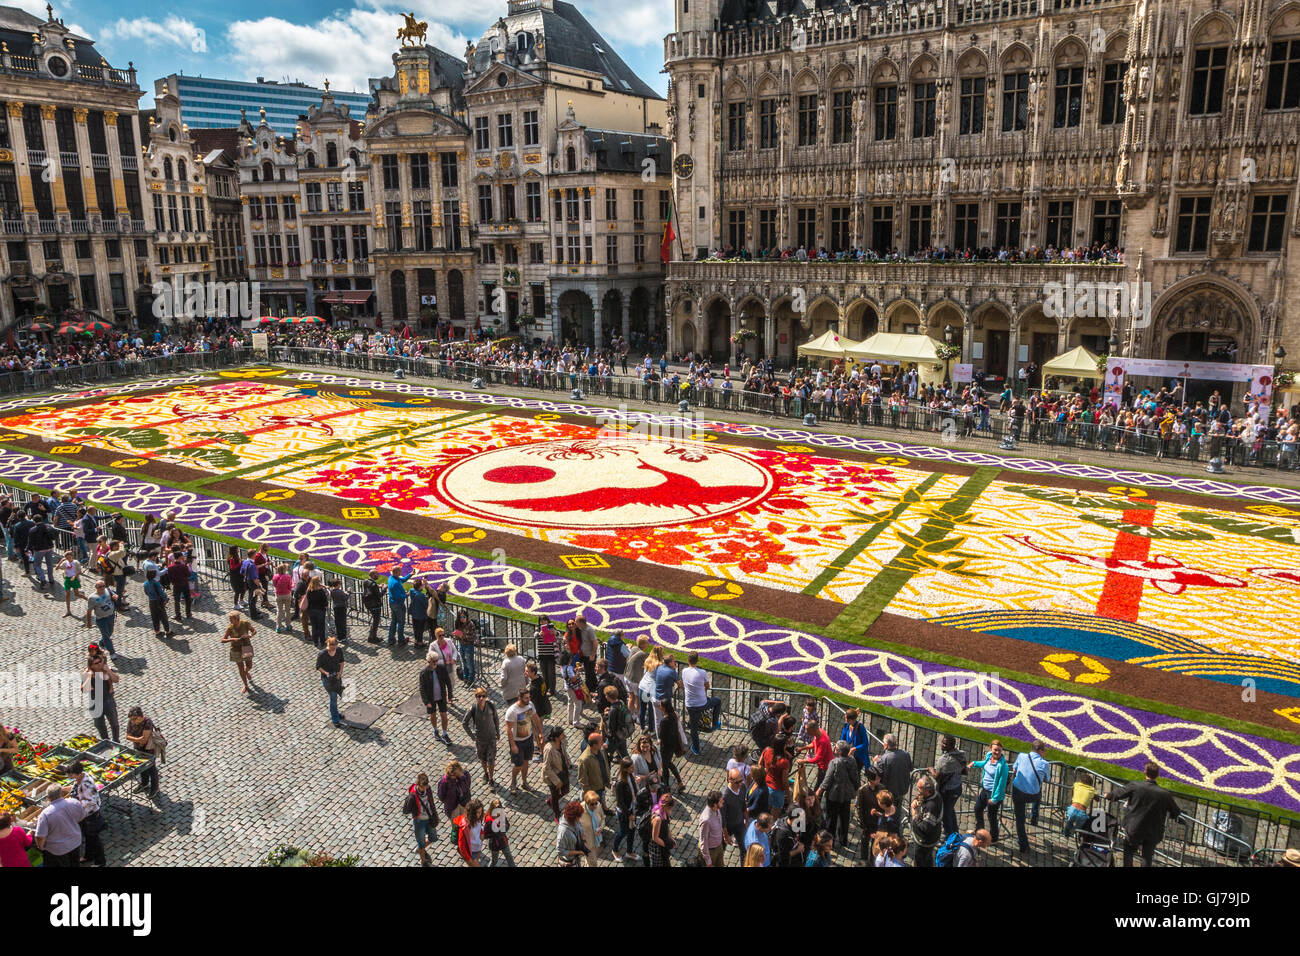 Le tapis de fleurs à Bruxelles Belgique Banque D'Images